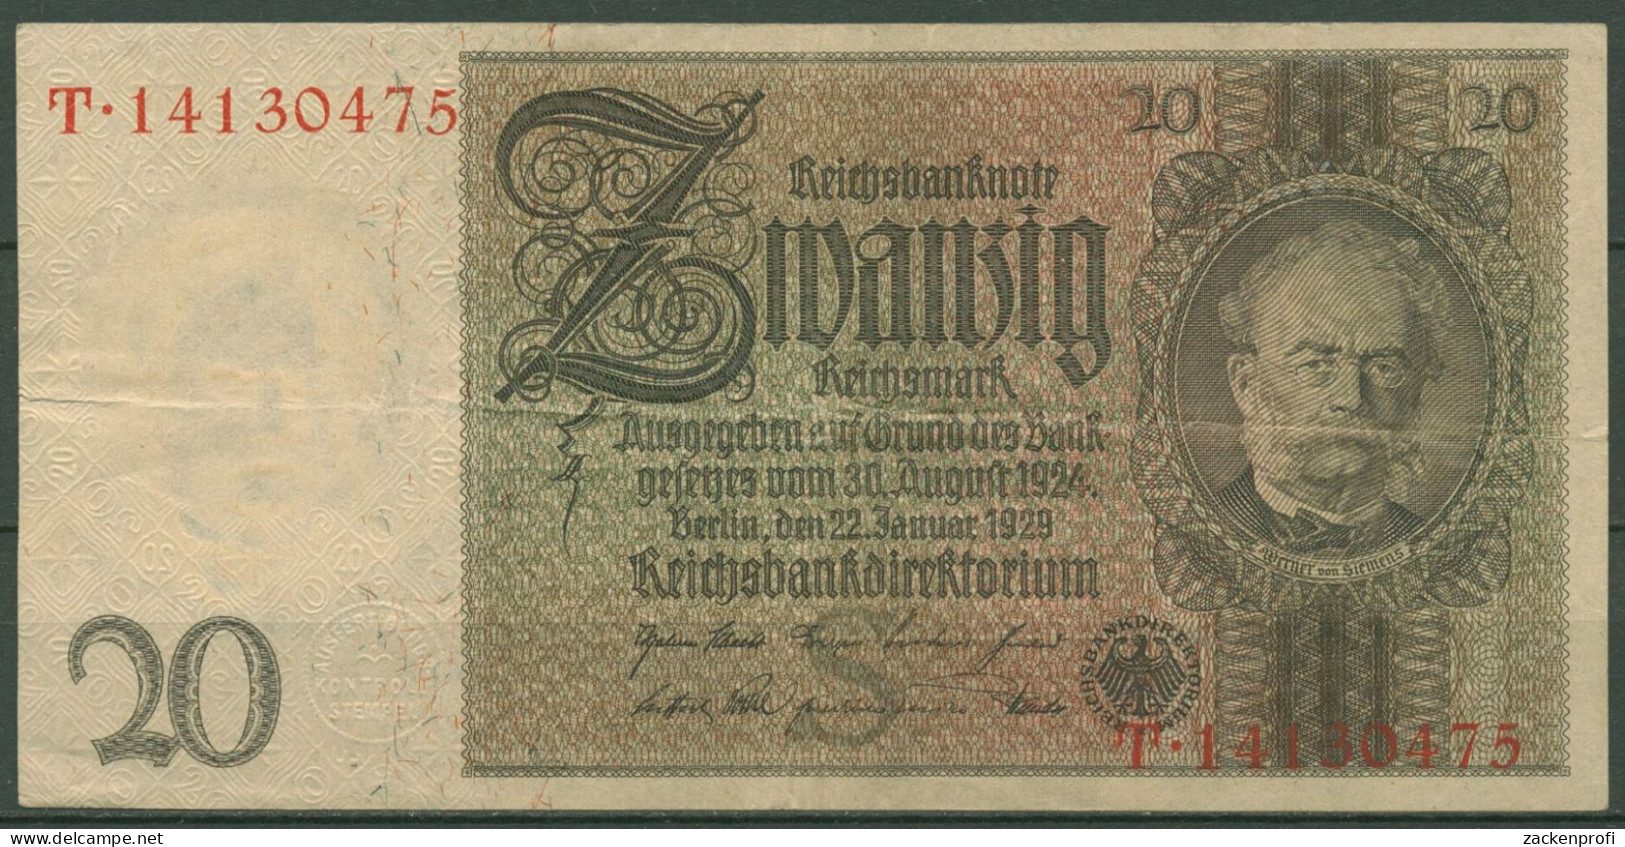 Dt. Reich 20 Reichsmark 1929, DEU-184a Serie S/T, Gebraucht (K1509) - 20 Mark